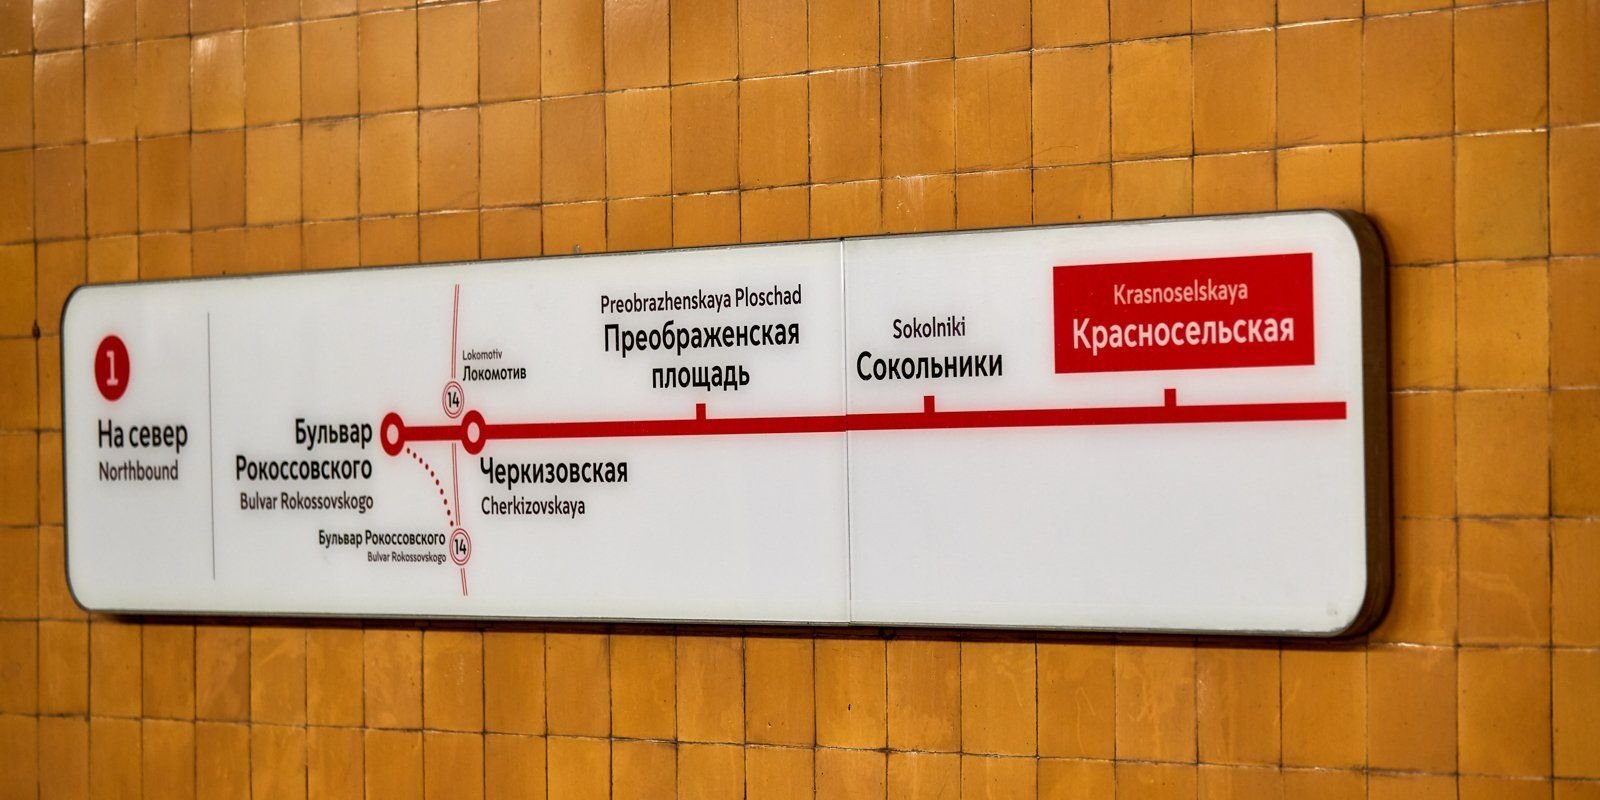 метро красносельская выходы из метро